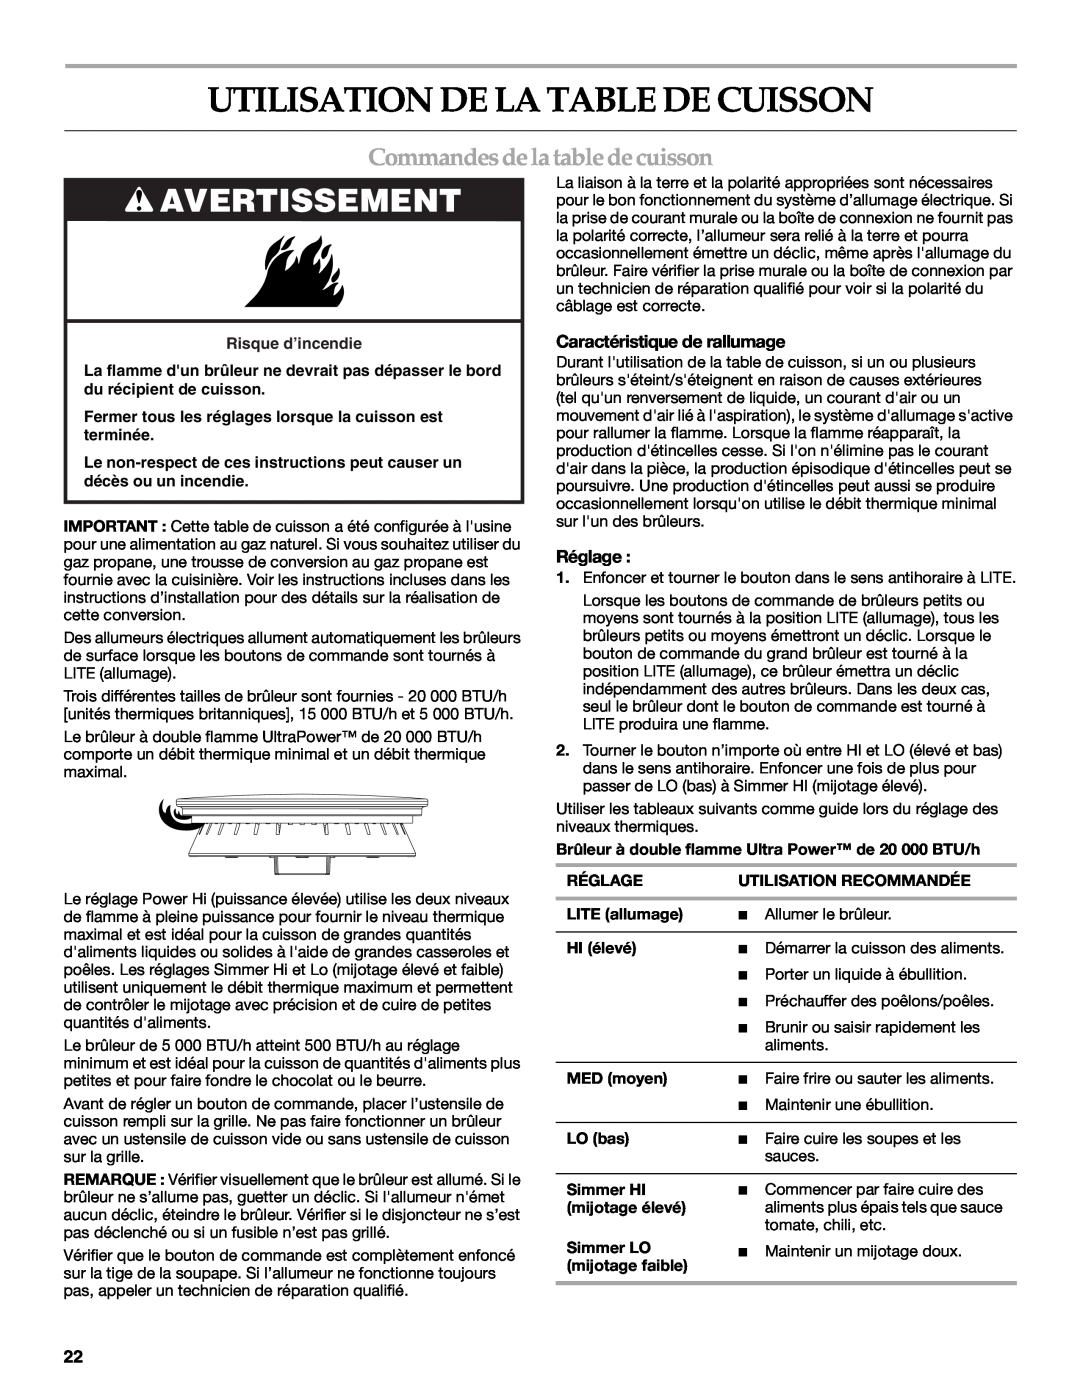 KitchenAid KGCU483VSS manual Utilisation De La Table De Cuisson, Avertissement, Commandesdela table decuisson, Réglage 